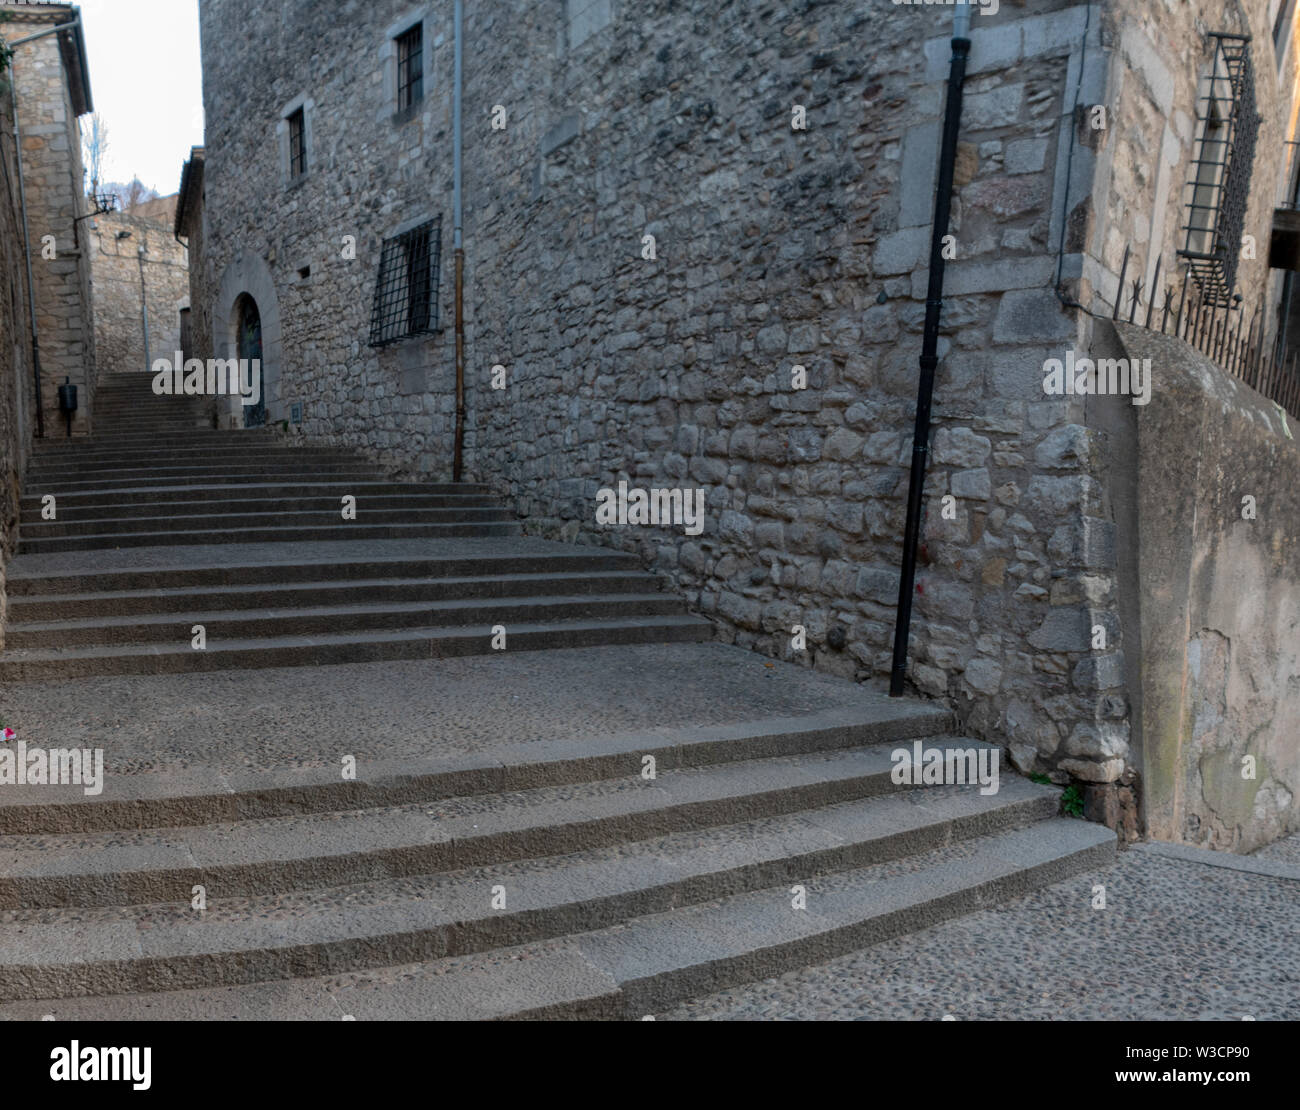 Pasos del casco antiguo de la ciudad de Girona y el rodaje de Juego de Tronos mientras Arya Stark era ciego y la mendicidad en las calles de Braavos Foto de stock